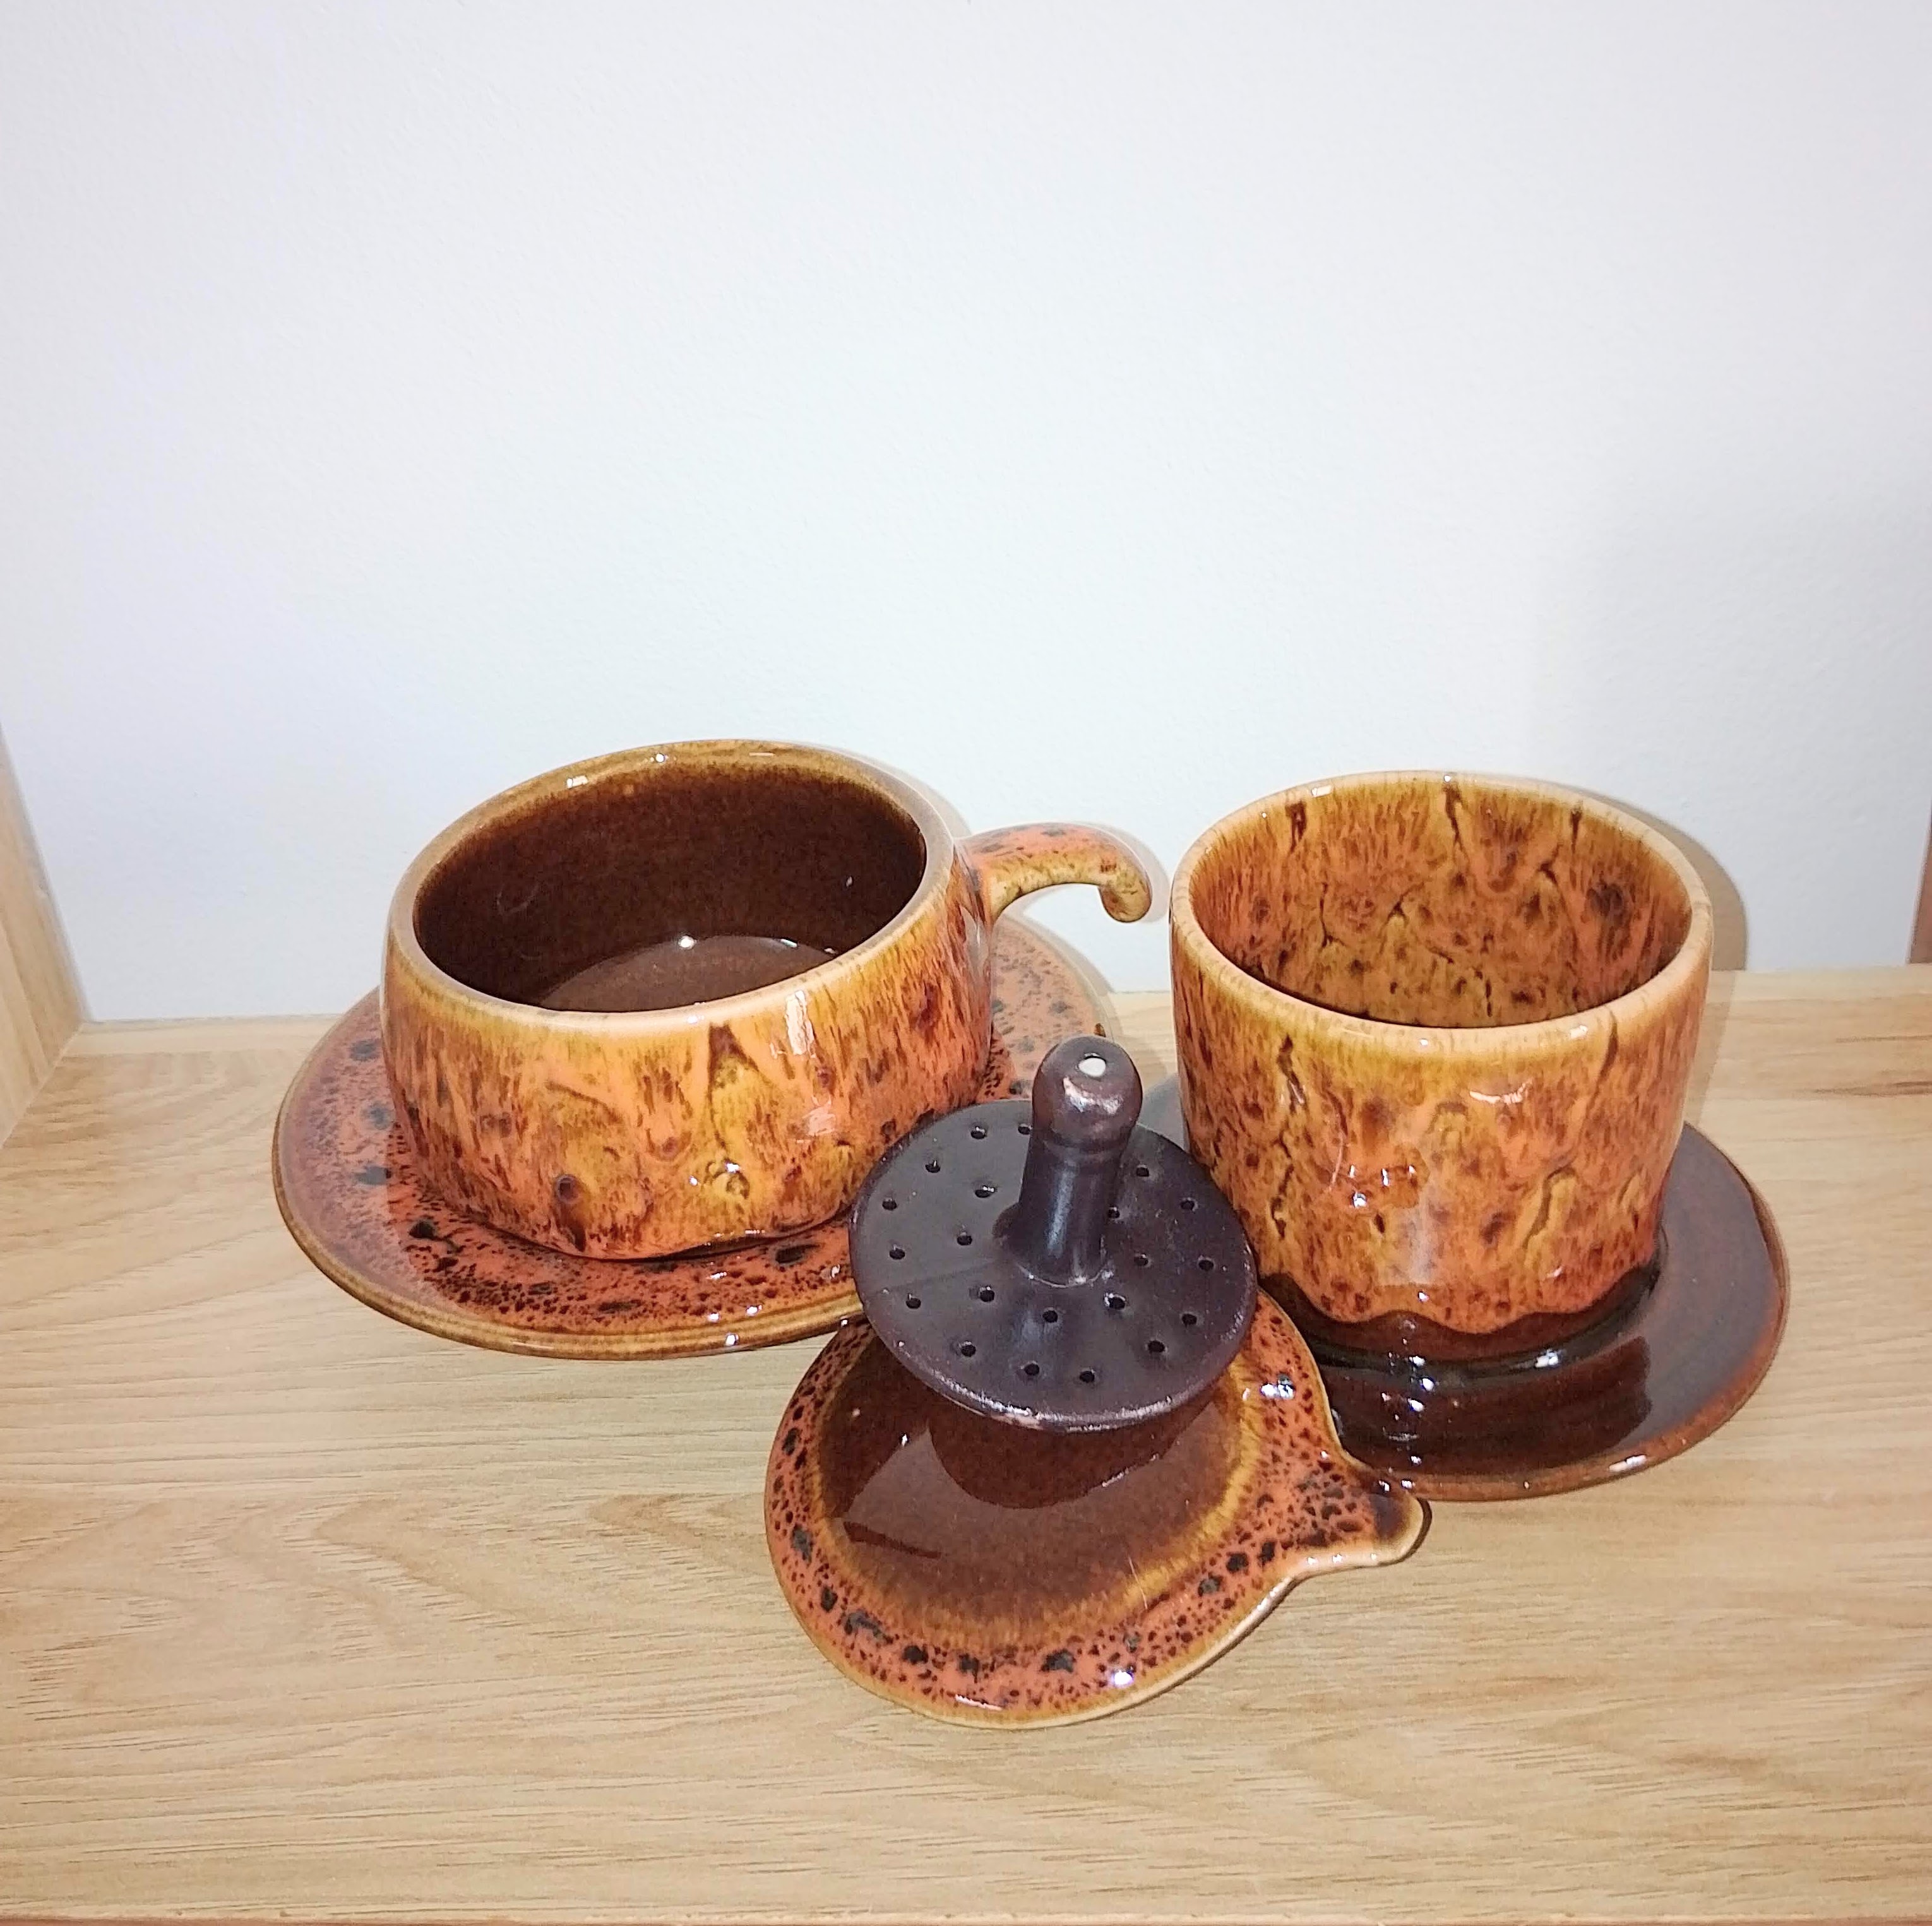 Bộ phin pha cà phê , chất liệu gốm sứ Bát Tràng tráng men hỏa biến cao cấp, Quà tặng sang trọng cho người yêu thích cà phê